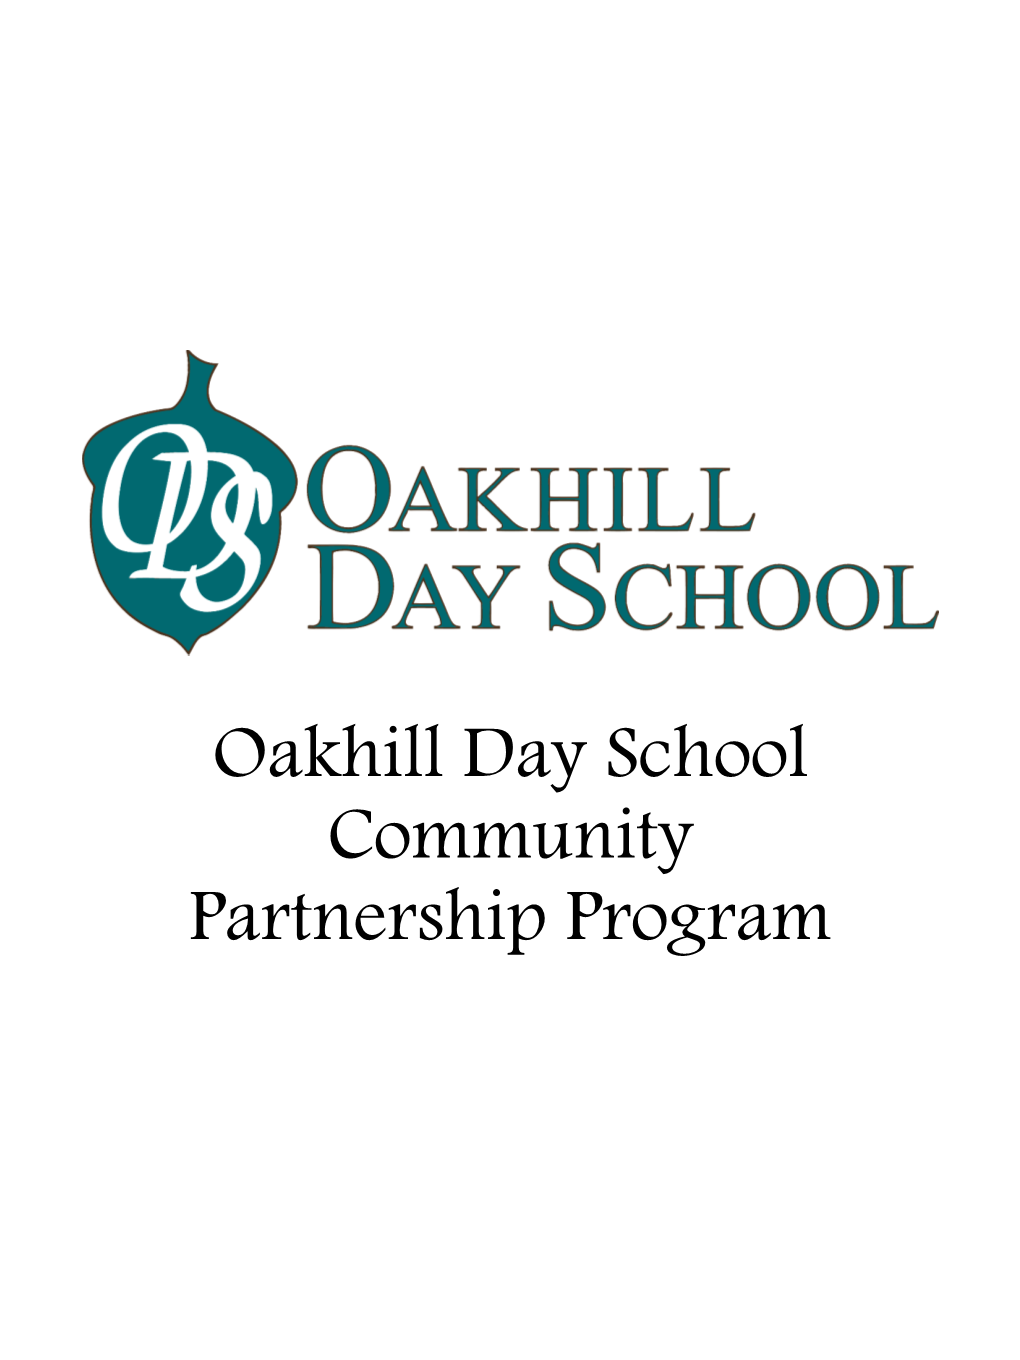 Oakhill Day School Community Partnership Program